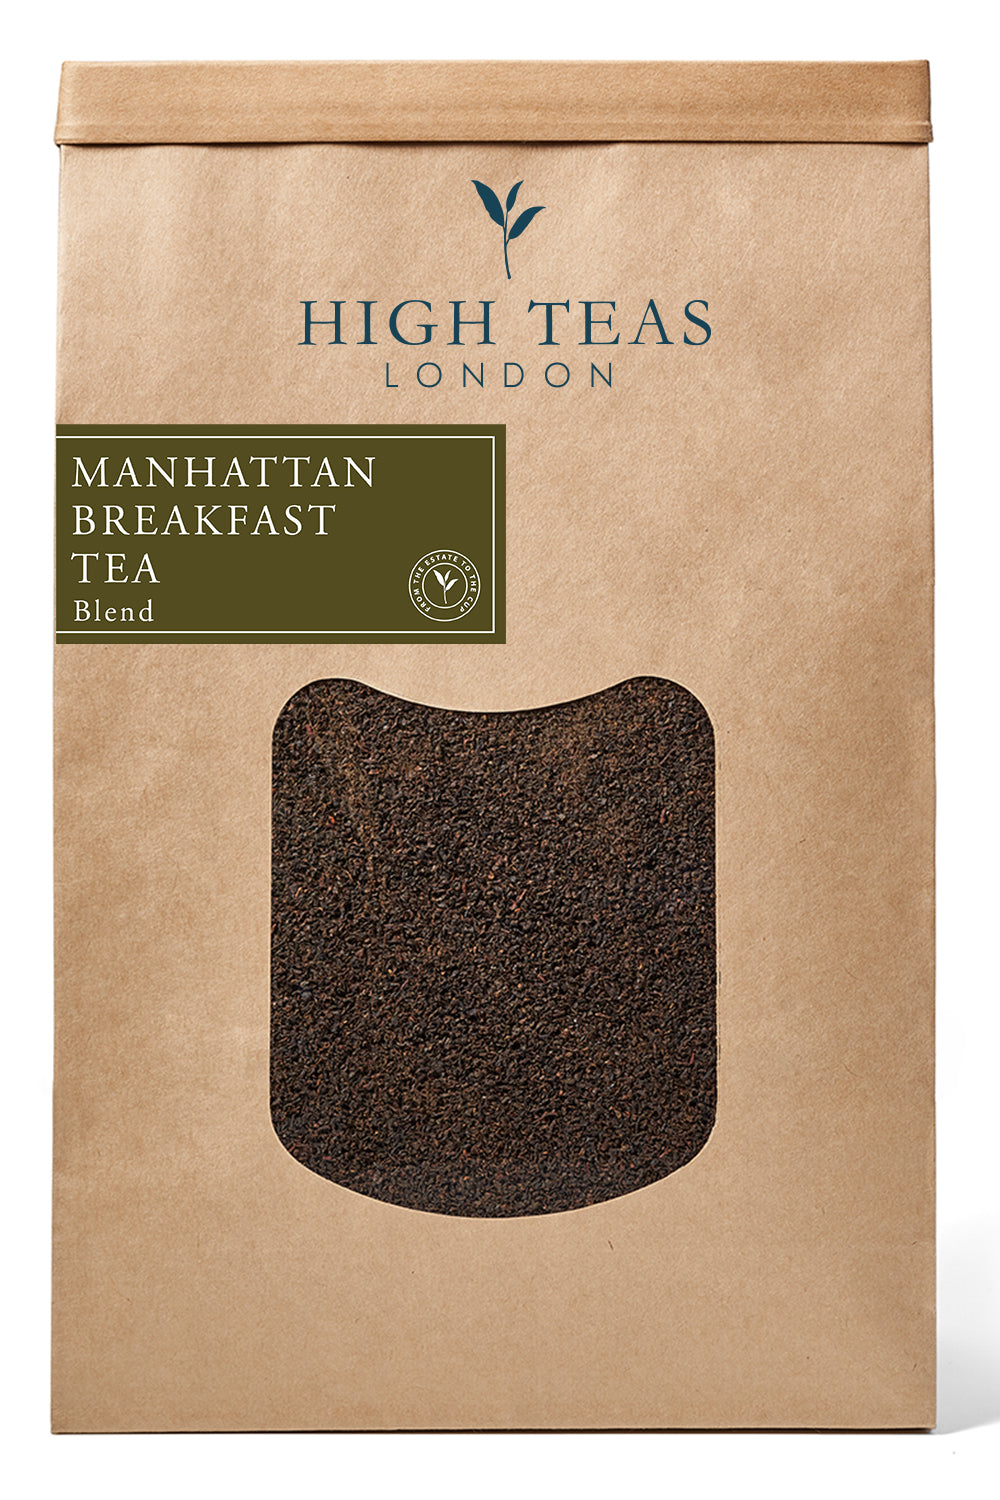 Manhattan Breakfast Tea-500g-Loose Leaf Tea-High Teas